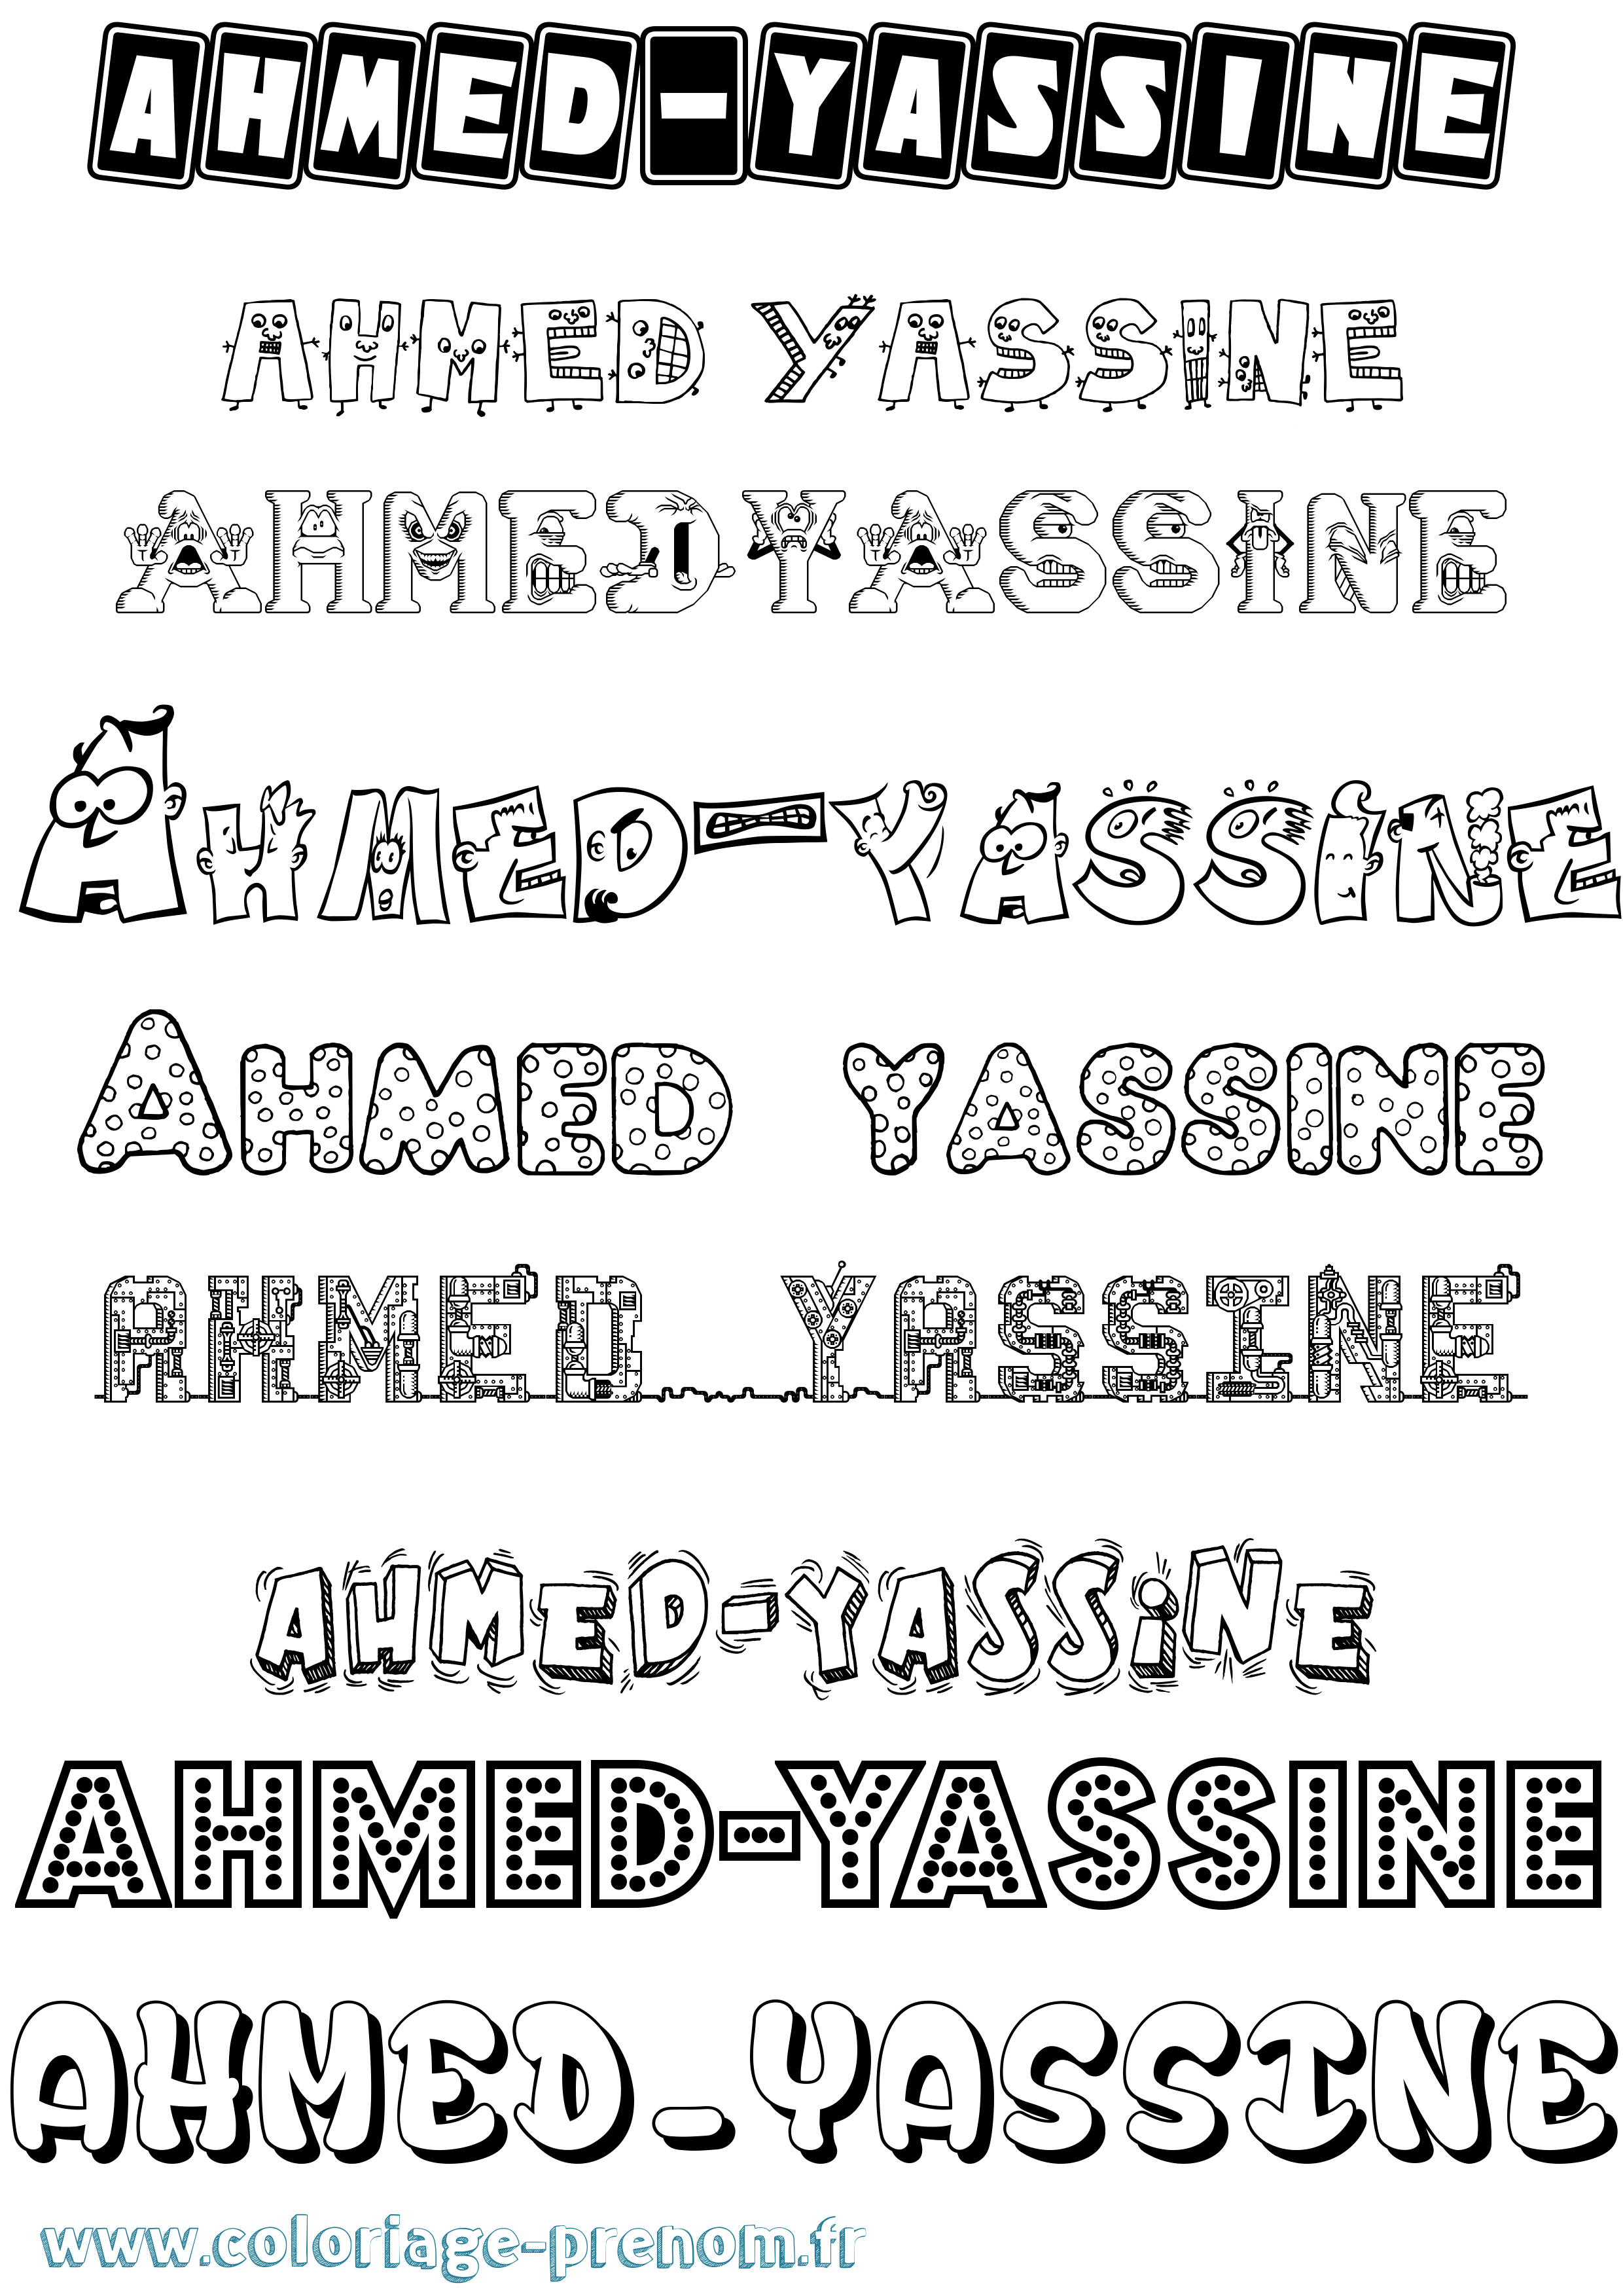 Coloriage prénom Ahmed-Yassine Fun